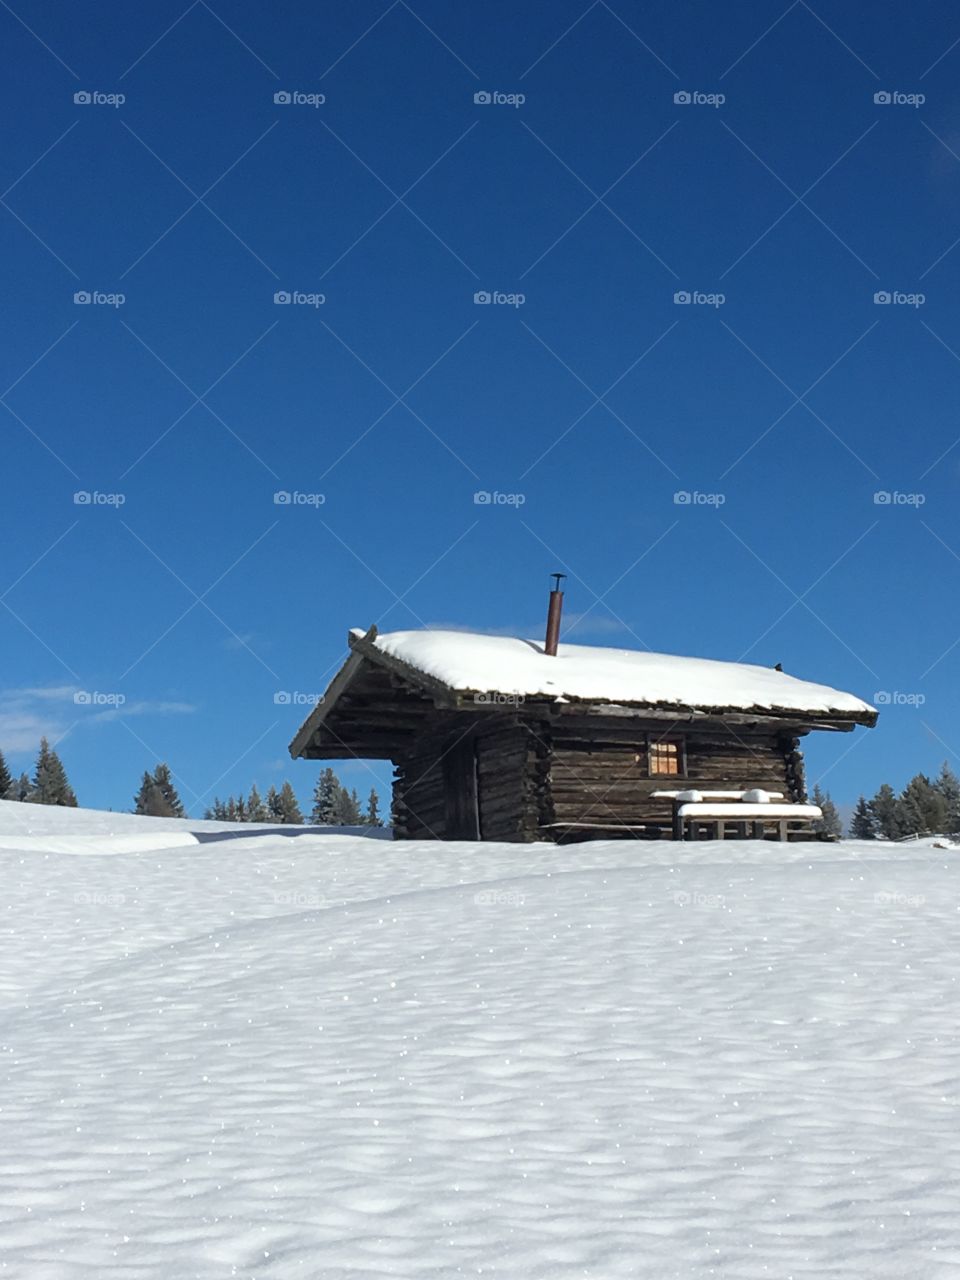 The Winter cabin 